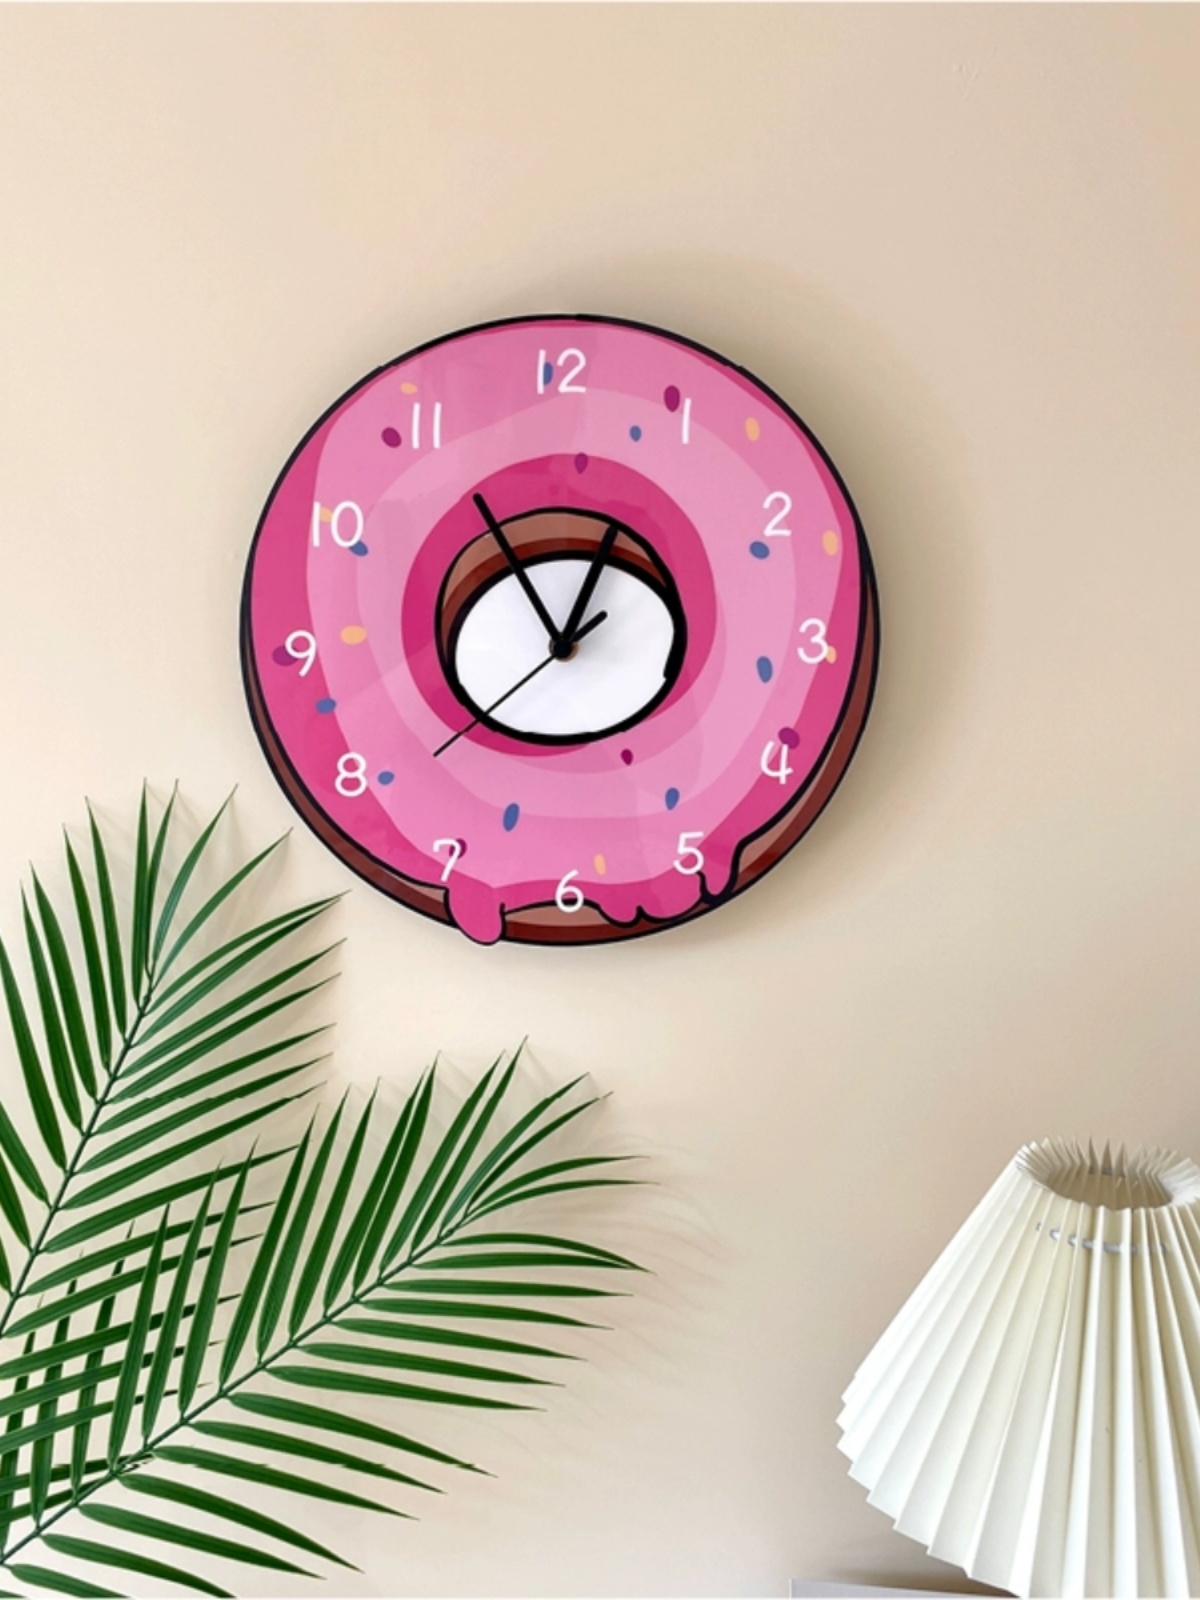 創意甜甜圈掛鐘可愛糖果造型裝飾店鋪甜品店簡約靜音時鐘 (5.6折)